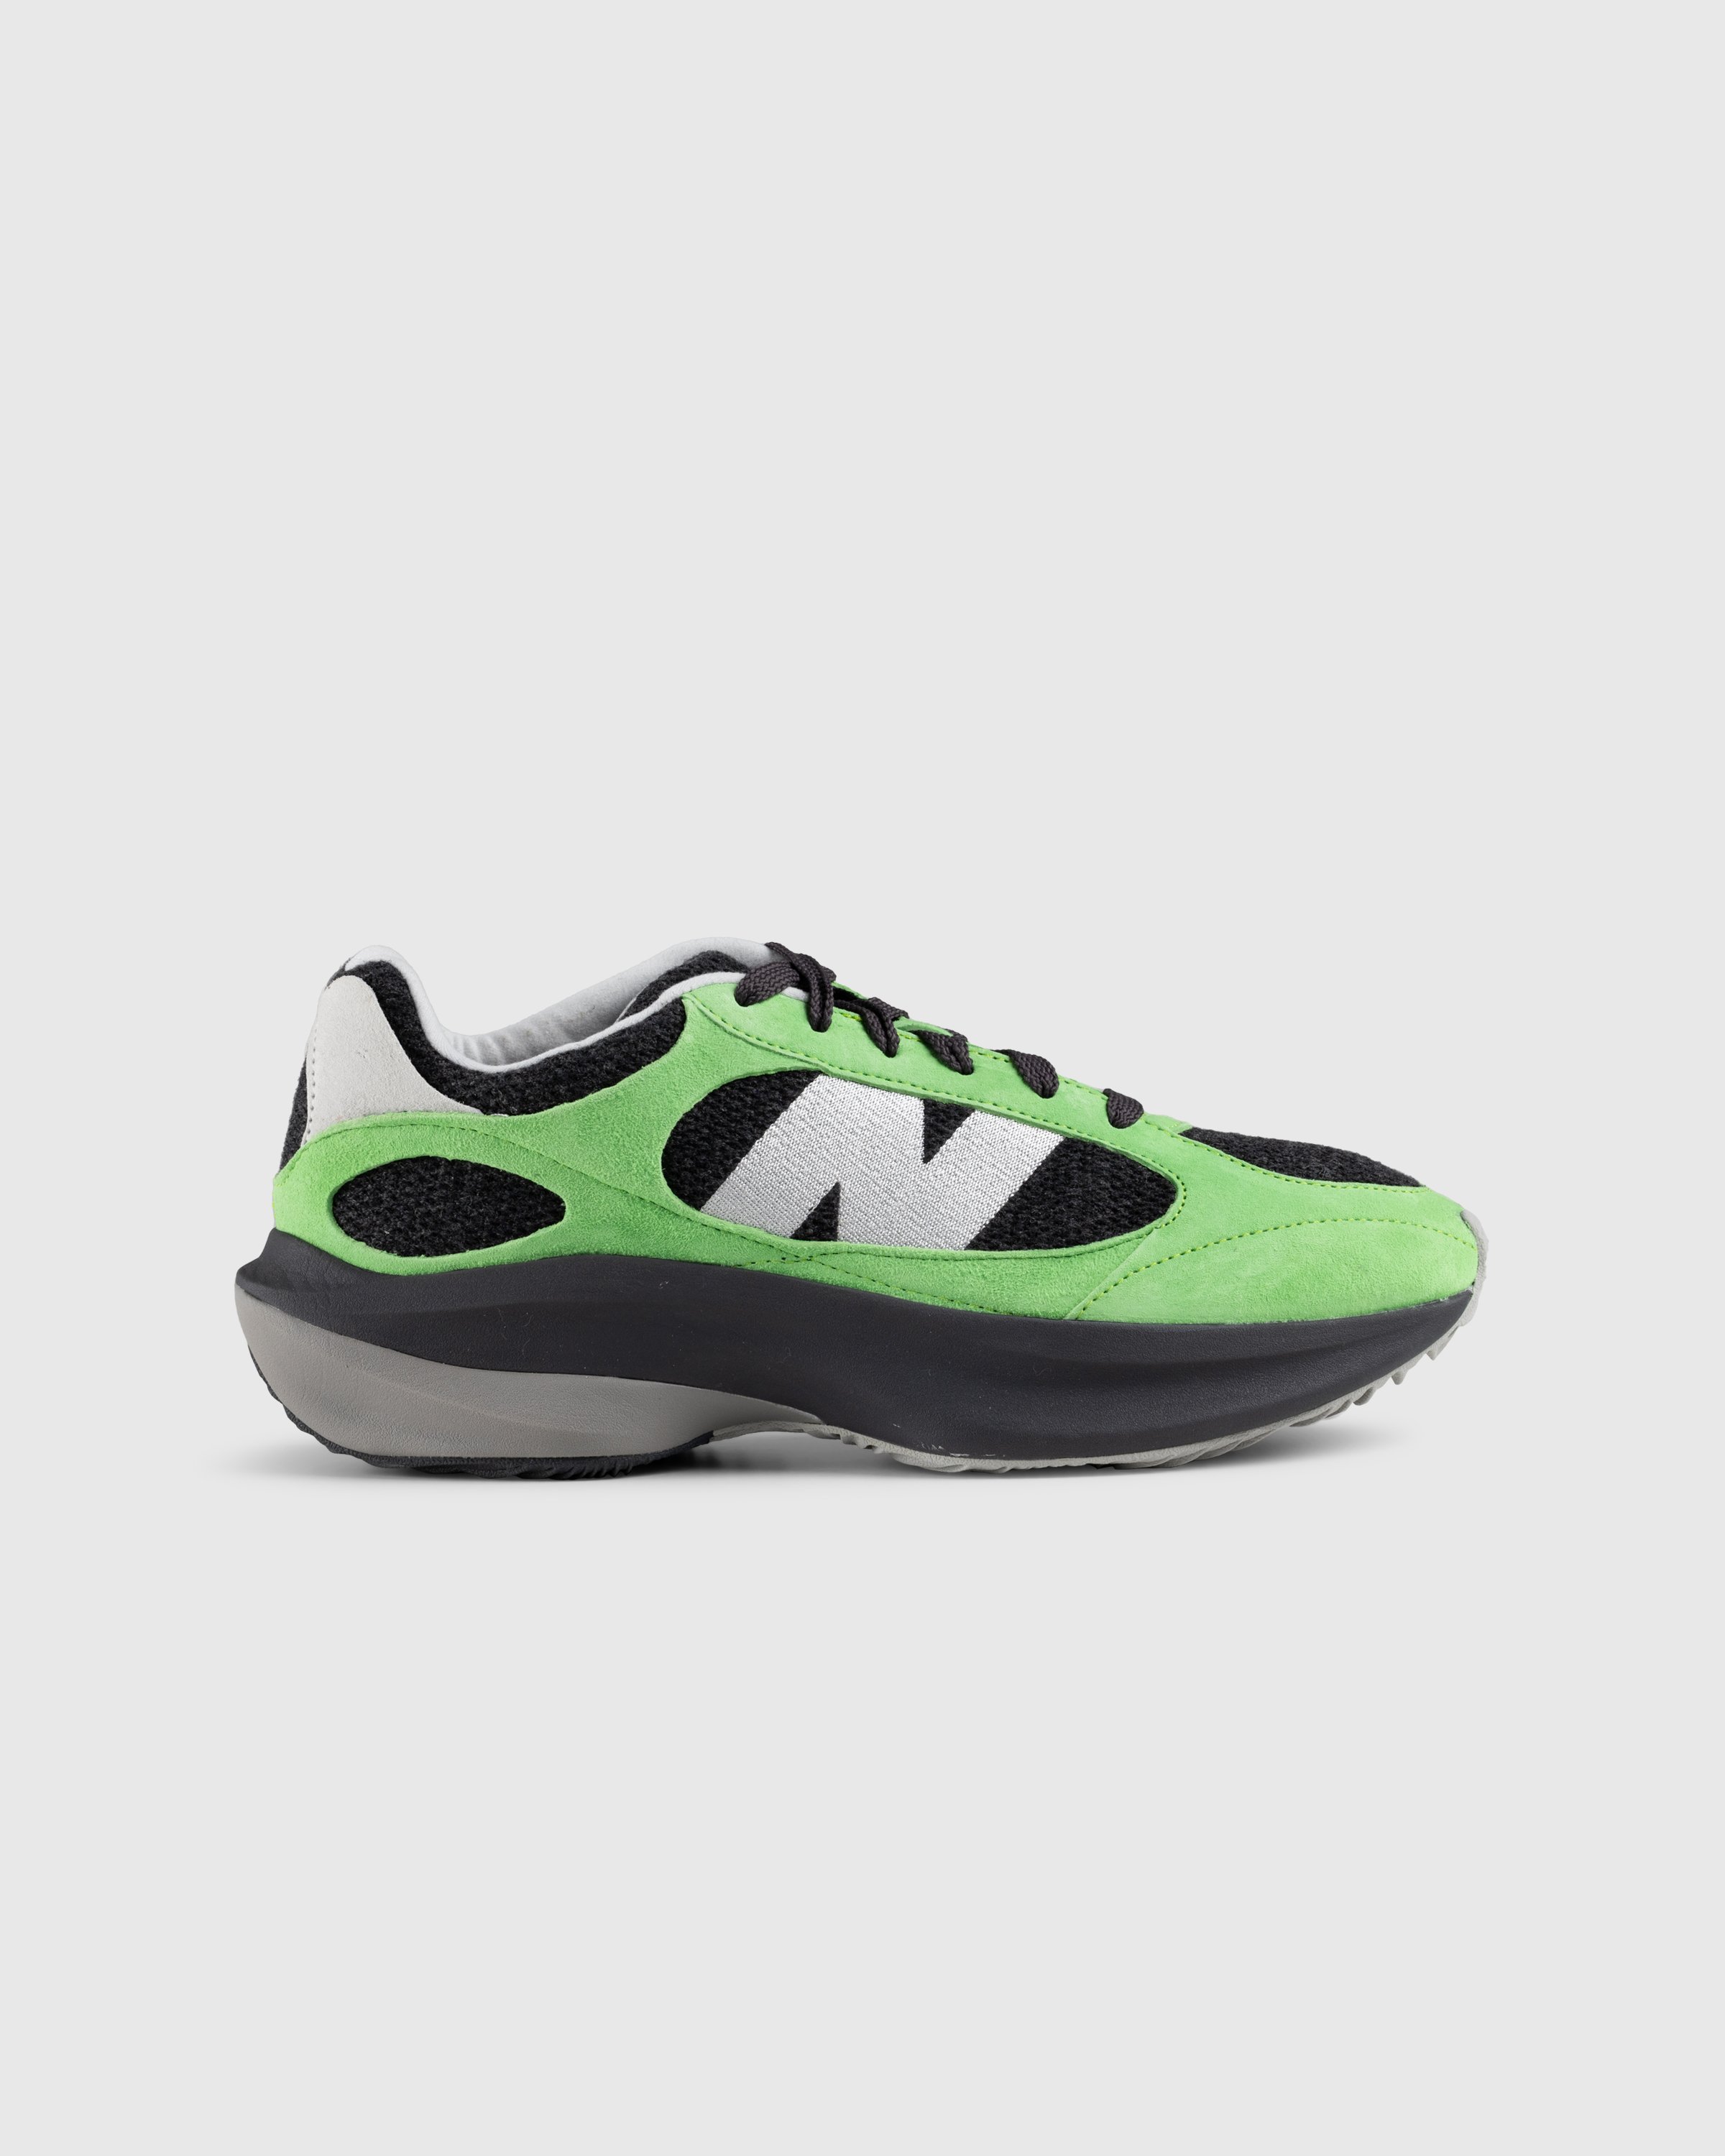 New Balance - WRPD Runner Green/Summer Fog - Footwear - Green - Image 1